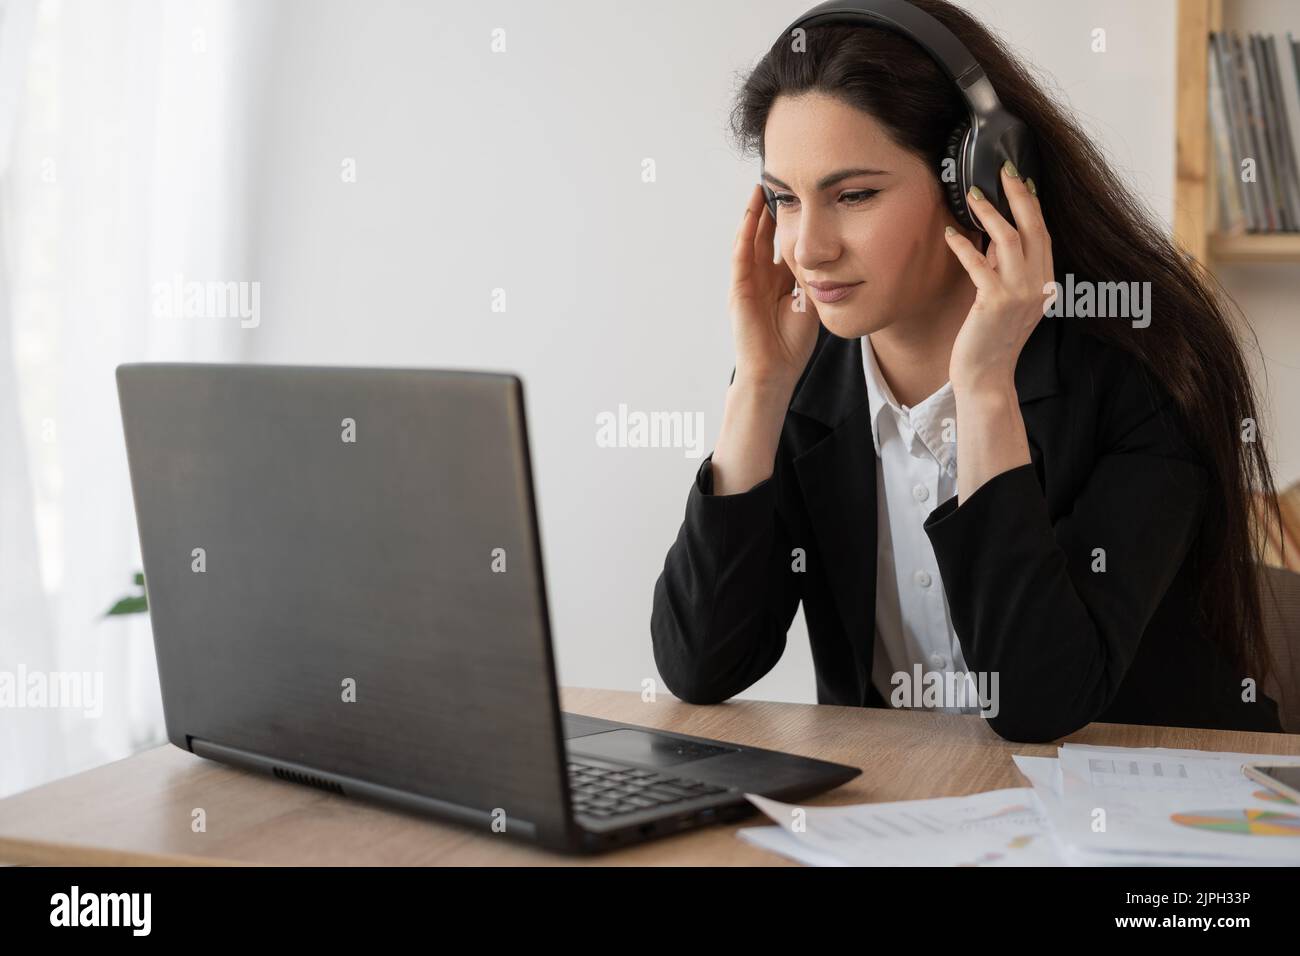 Seriöse Geschäftsfrau mit Kopfhörern, die sich ein Webinar auf dem Laptop ansieht, Computerkurse lernt, Anrufe tätigen, an Online-Konferenzen teilnehmen Stockfoto